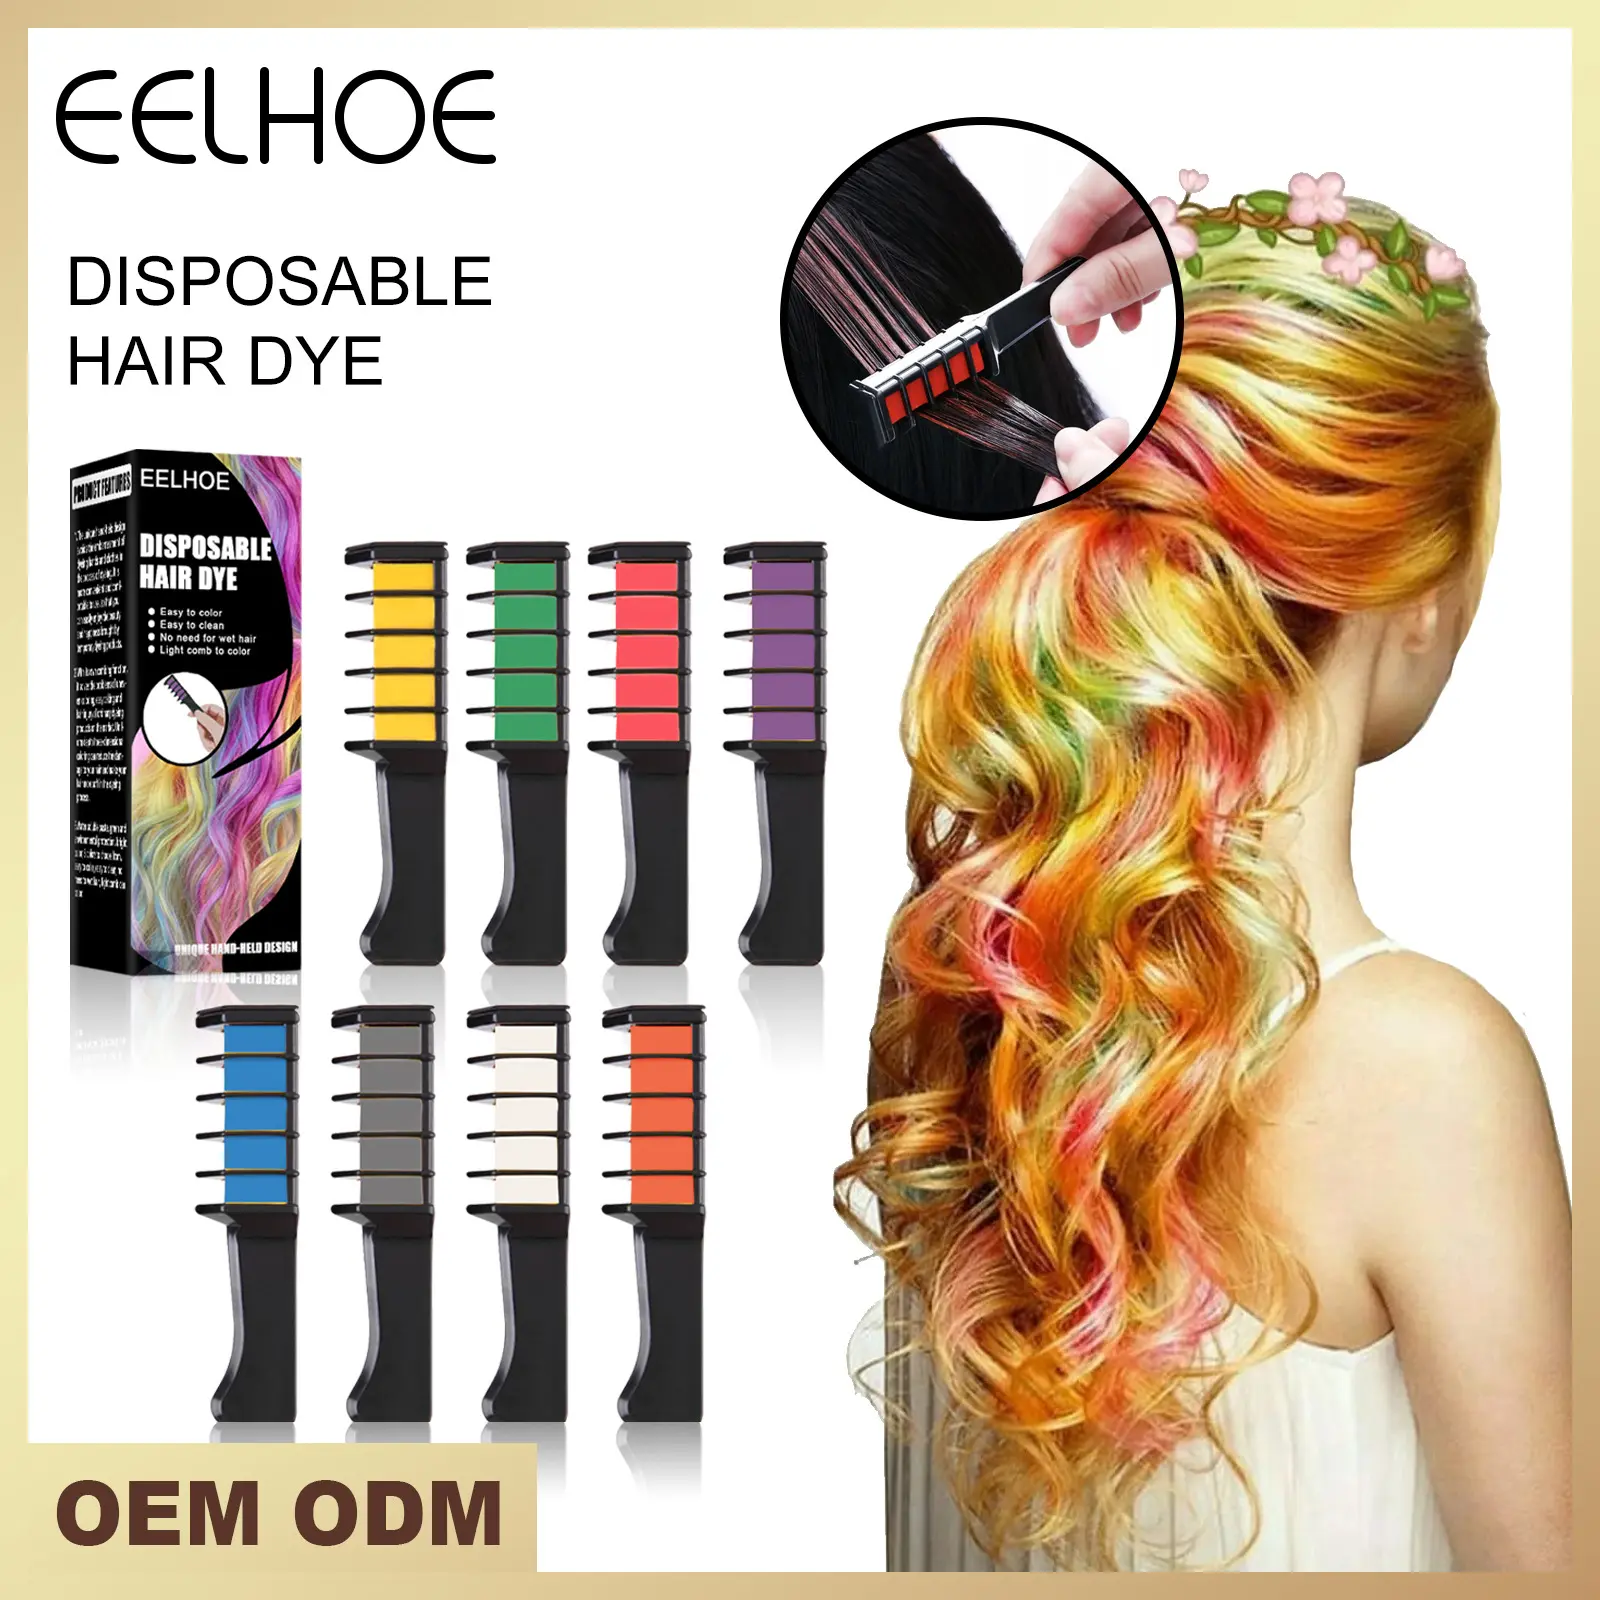 Eelhoe tintura de cabelo descartável portátil, tintura de cabelo portátil e fácil de mudar de cor sem dor, produtos para cuidados com o cabelo